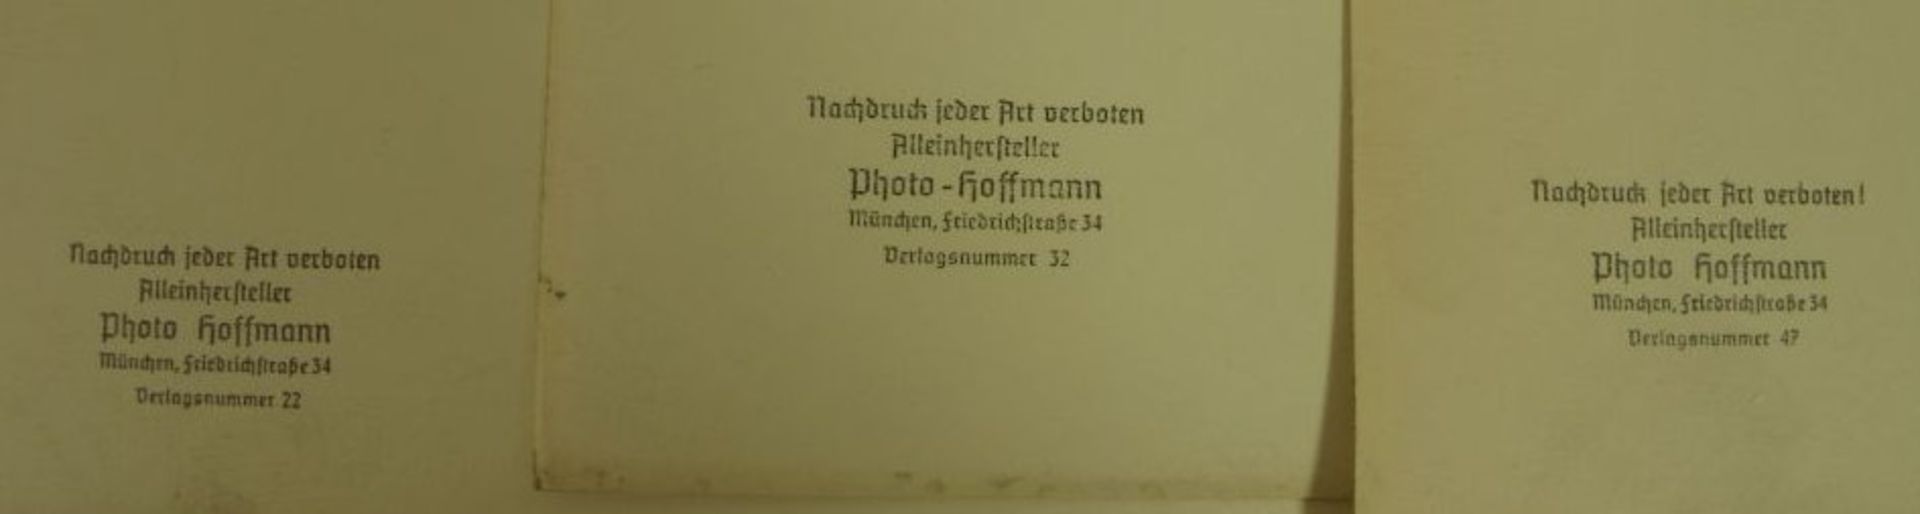 4x Fotografien sowie 2x Drucke "Adolf Hitler", verso Stempel "Photo Hoffmann, München", Größte 30 - Bild 3 aus 3